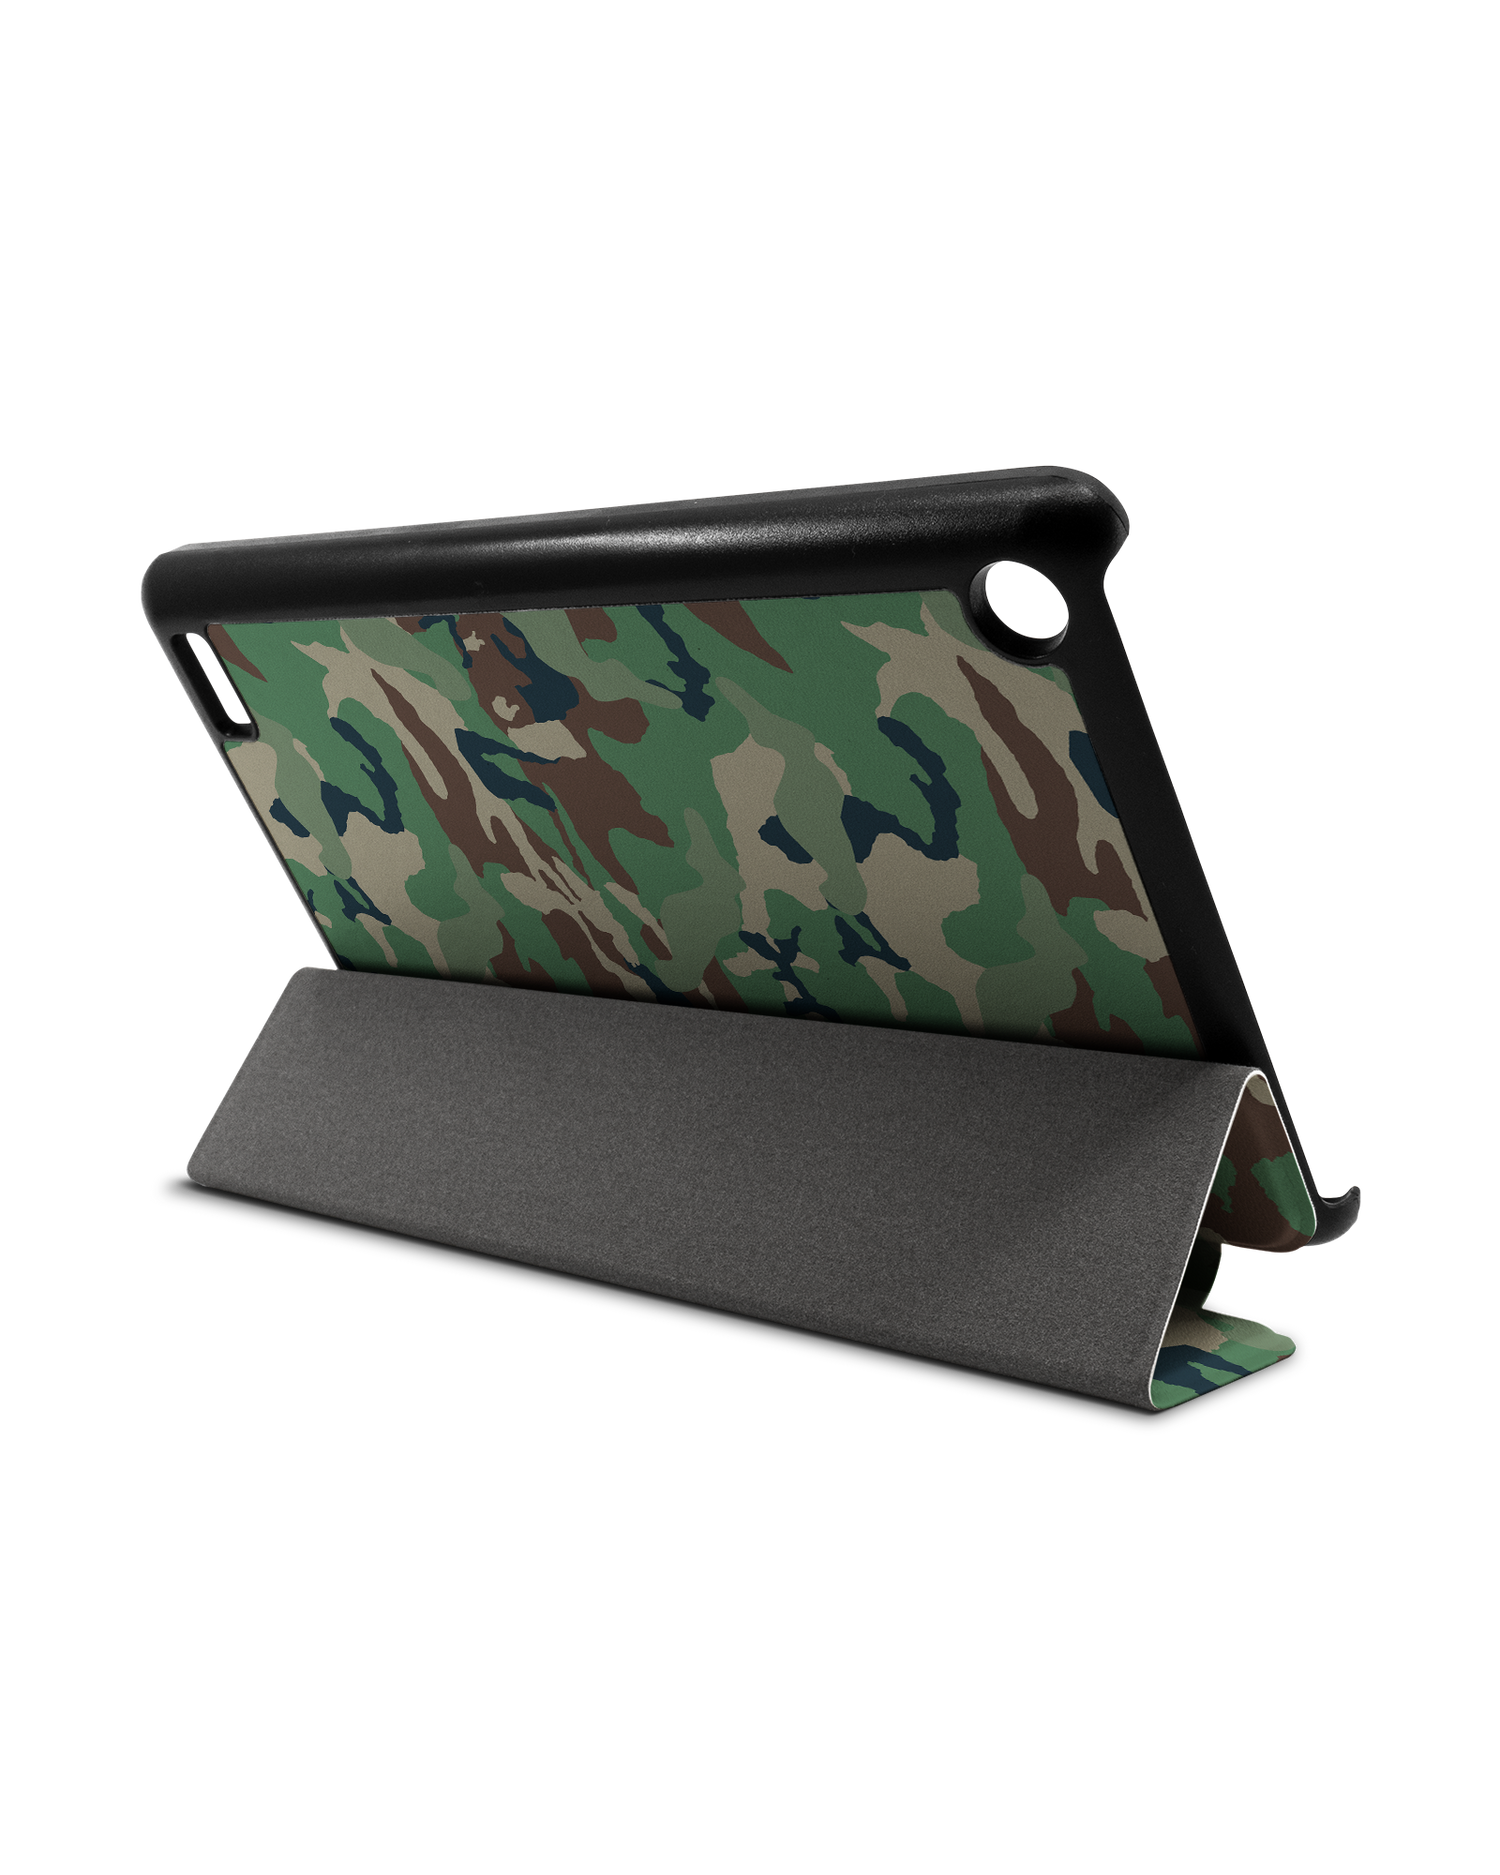 Green and Brown Camo Tablet Smart Case für Amazon Fire 7: Aufgestellt im Querformat